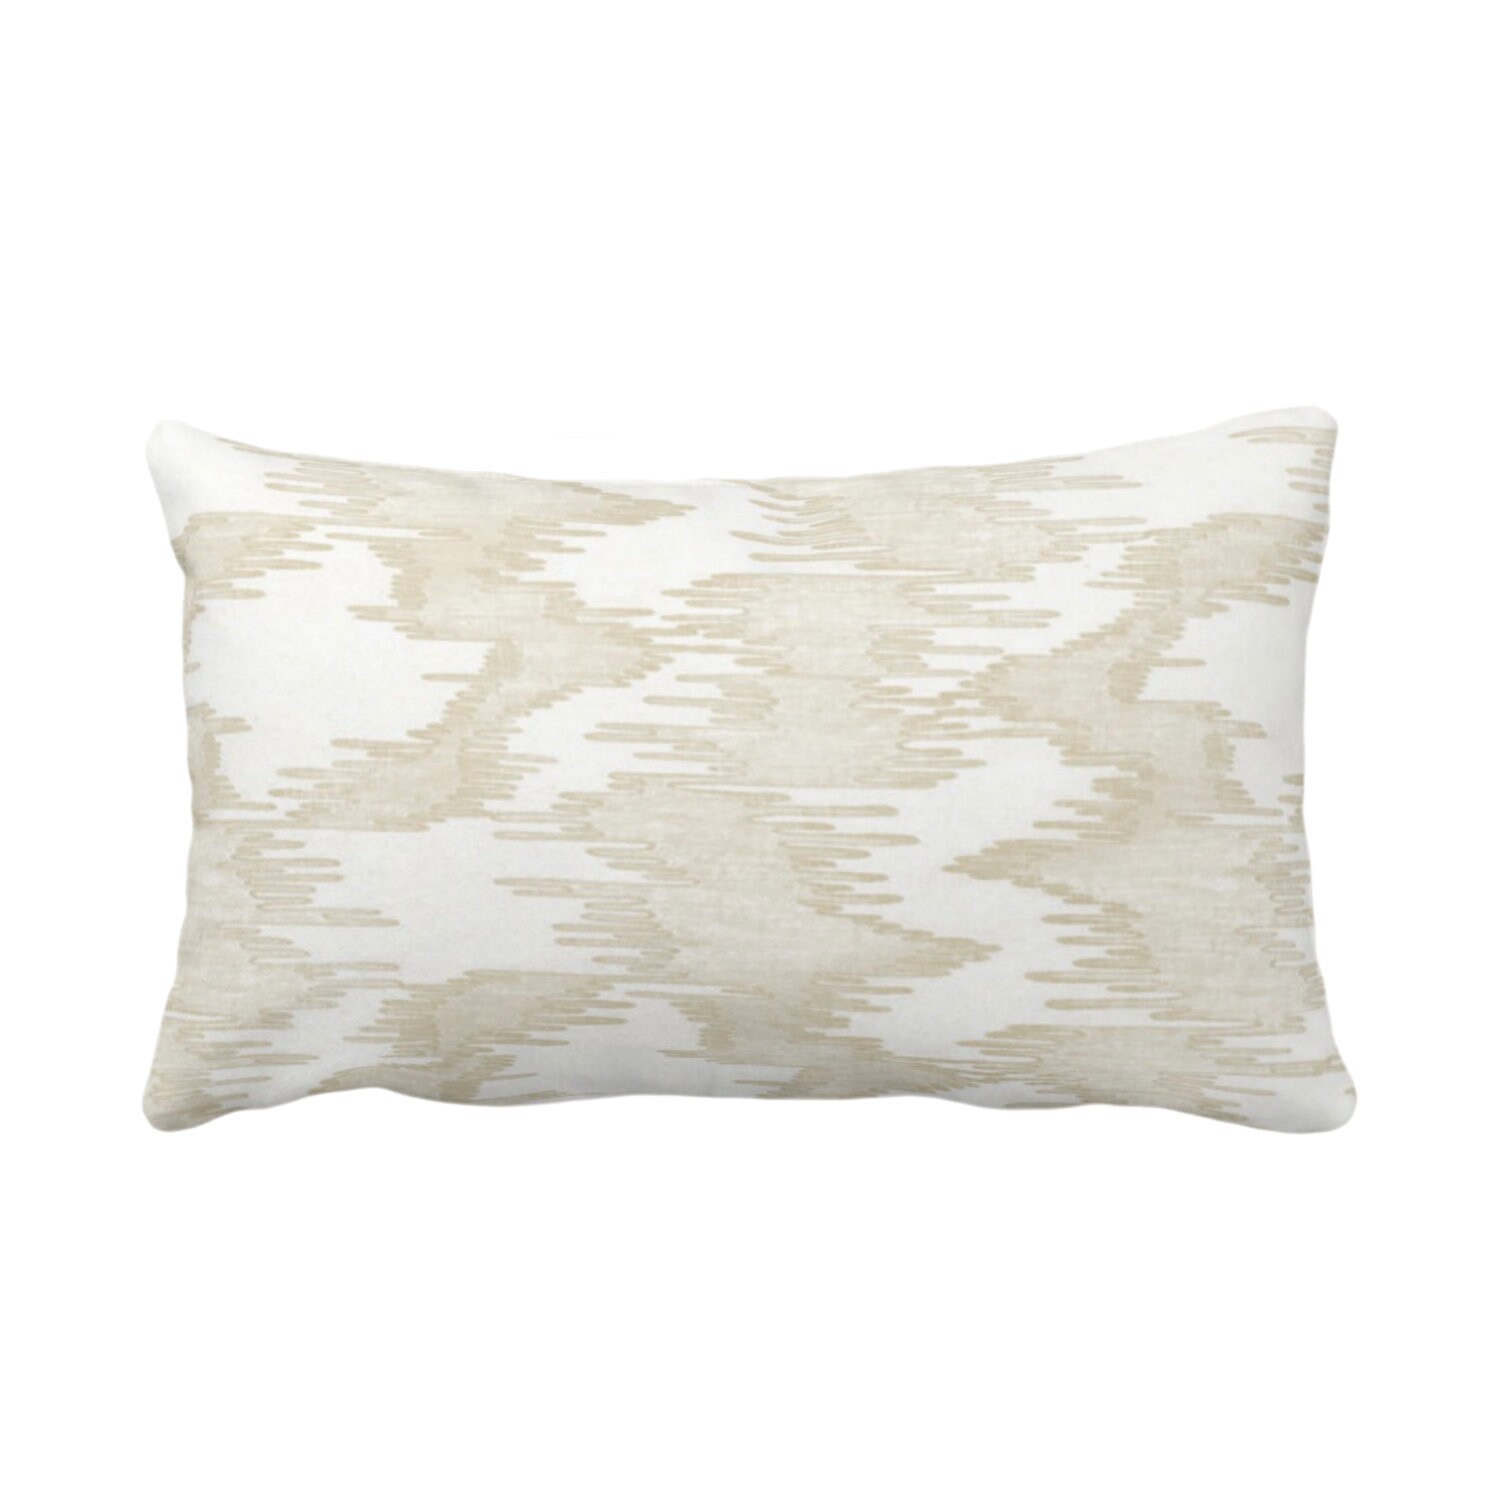 Ikat Print Throw Pillow or Cover, White/Cream 12 x 20 Lumbar Pillows ...